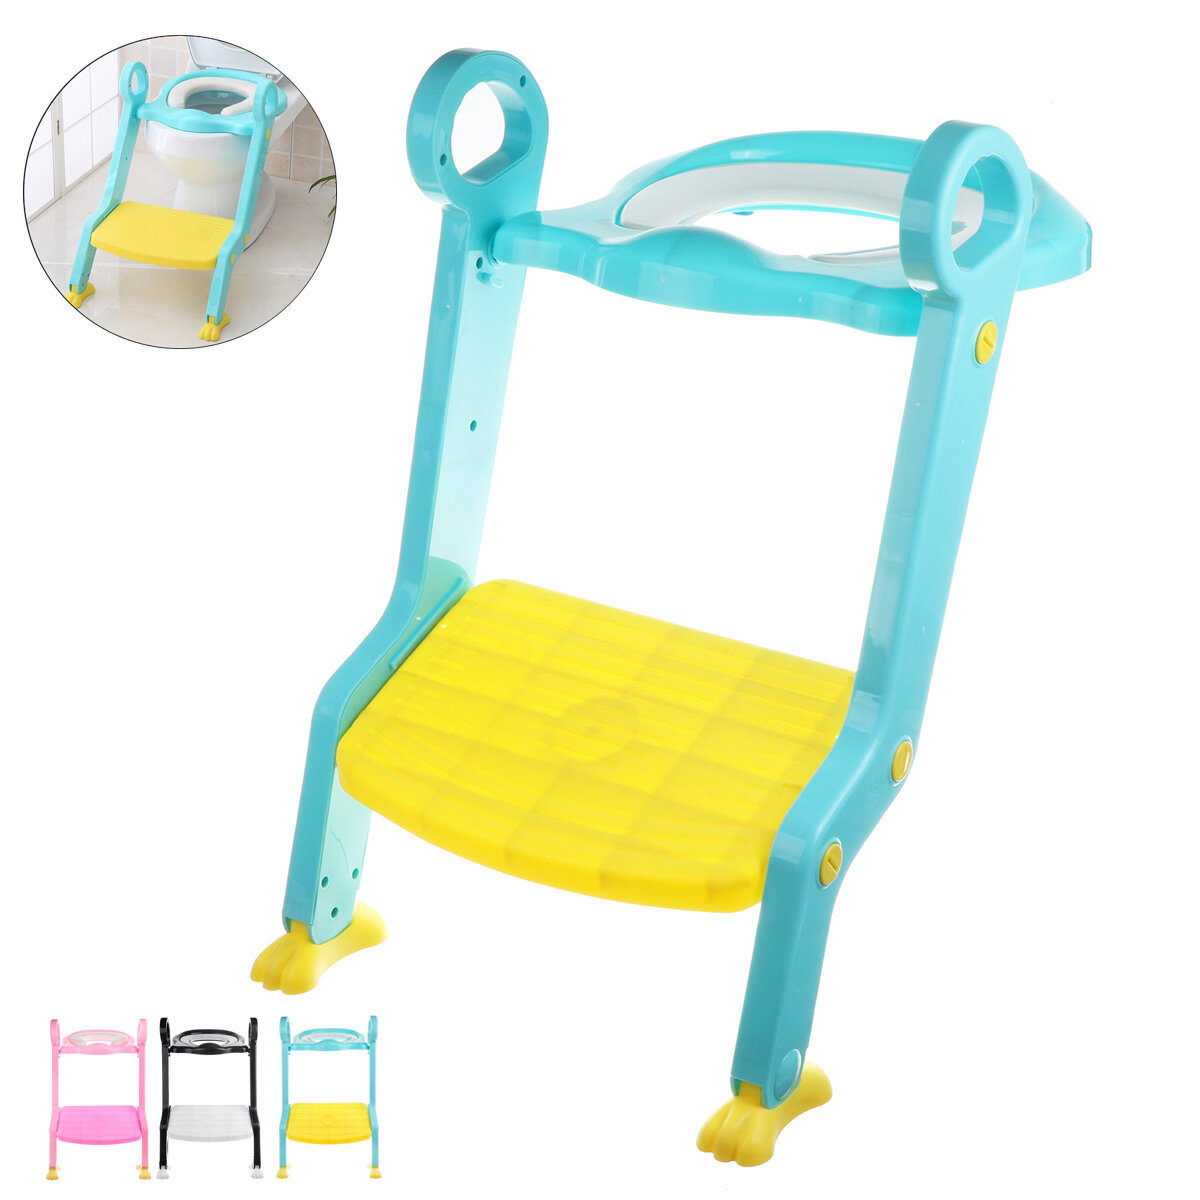 Összecsukható gyerek WC-szék állítható lépcsővel a biztonságos használat érdekében. Ajándék kisgyermekeknek.